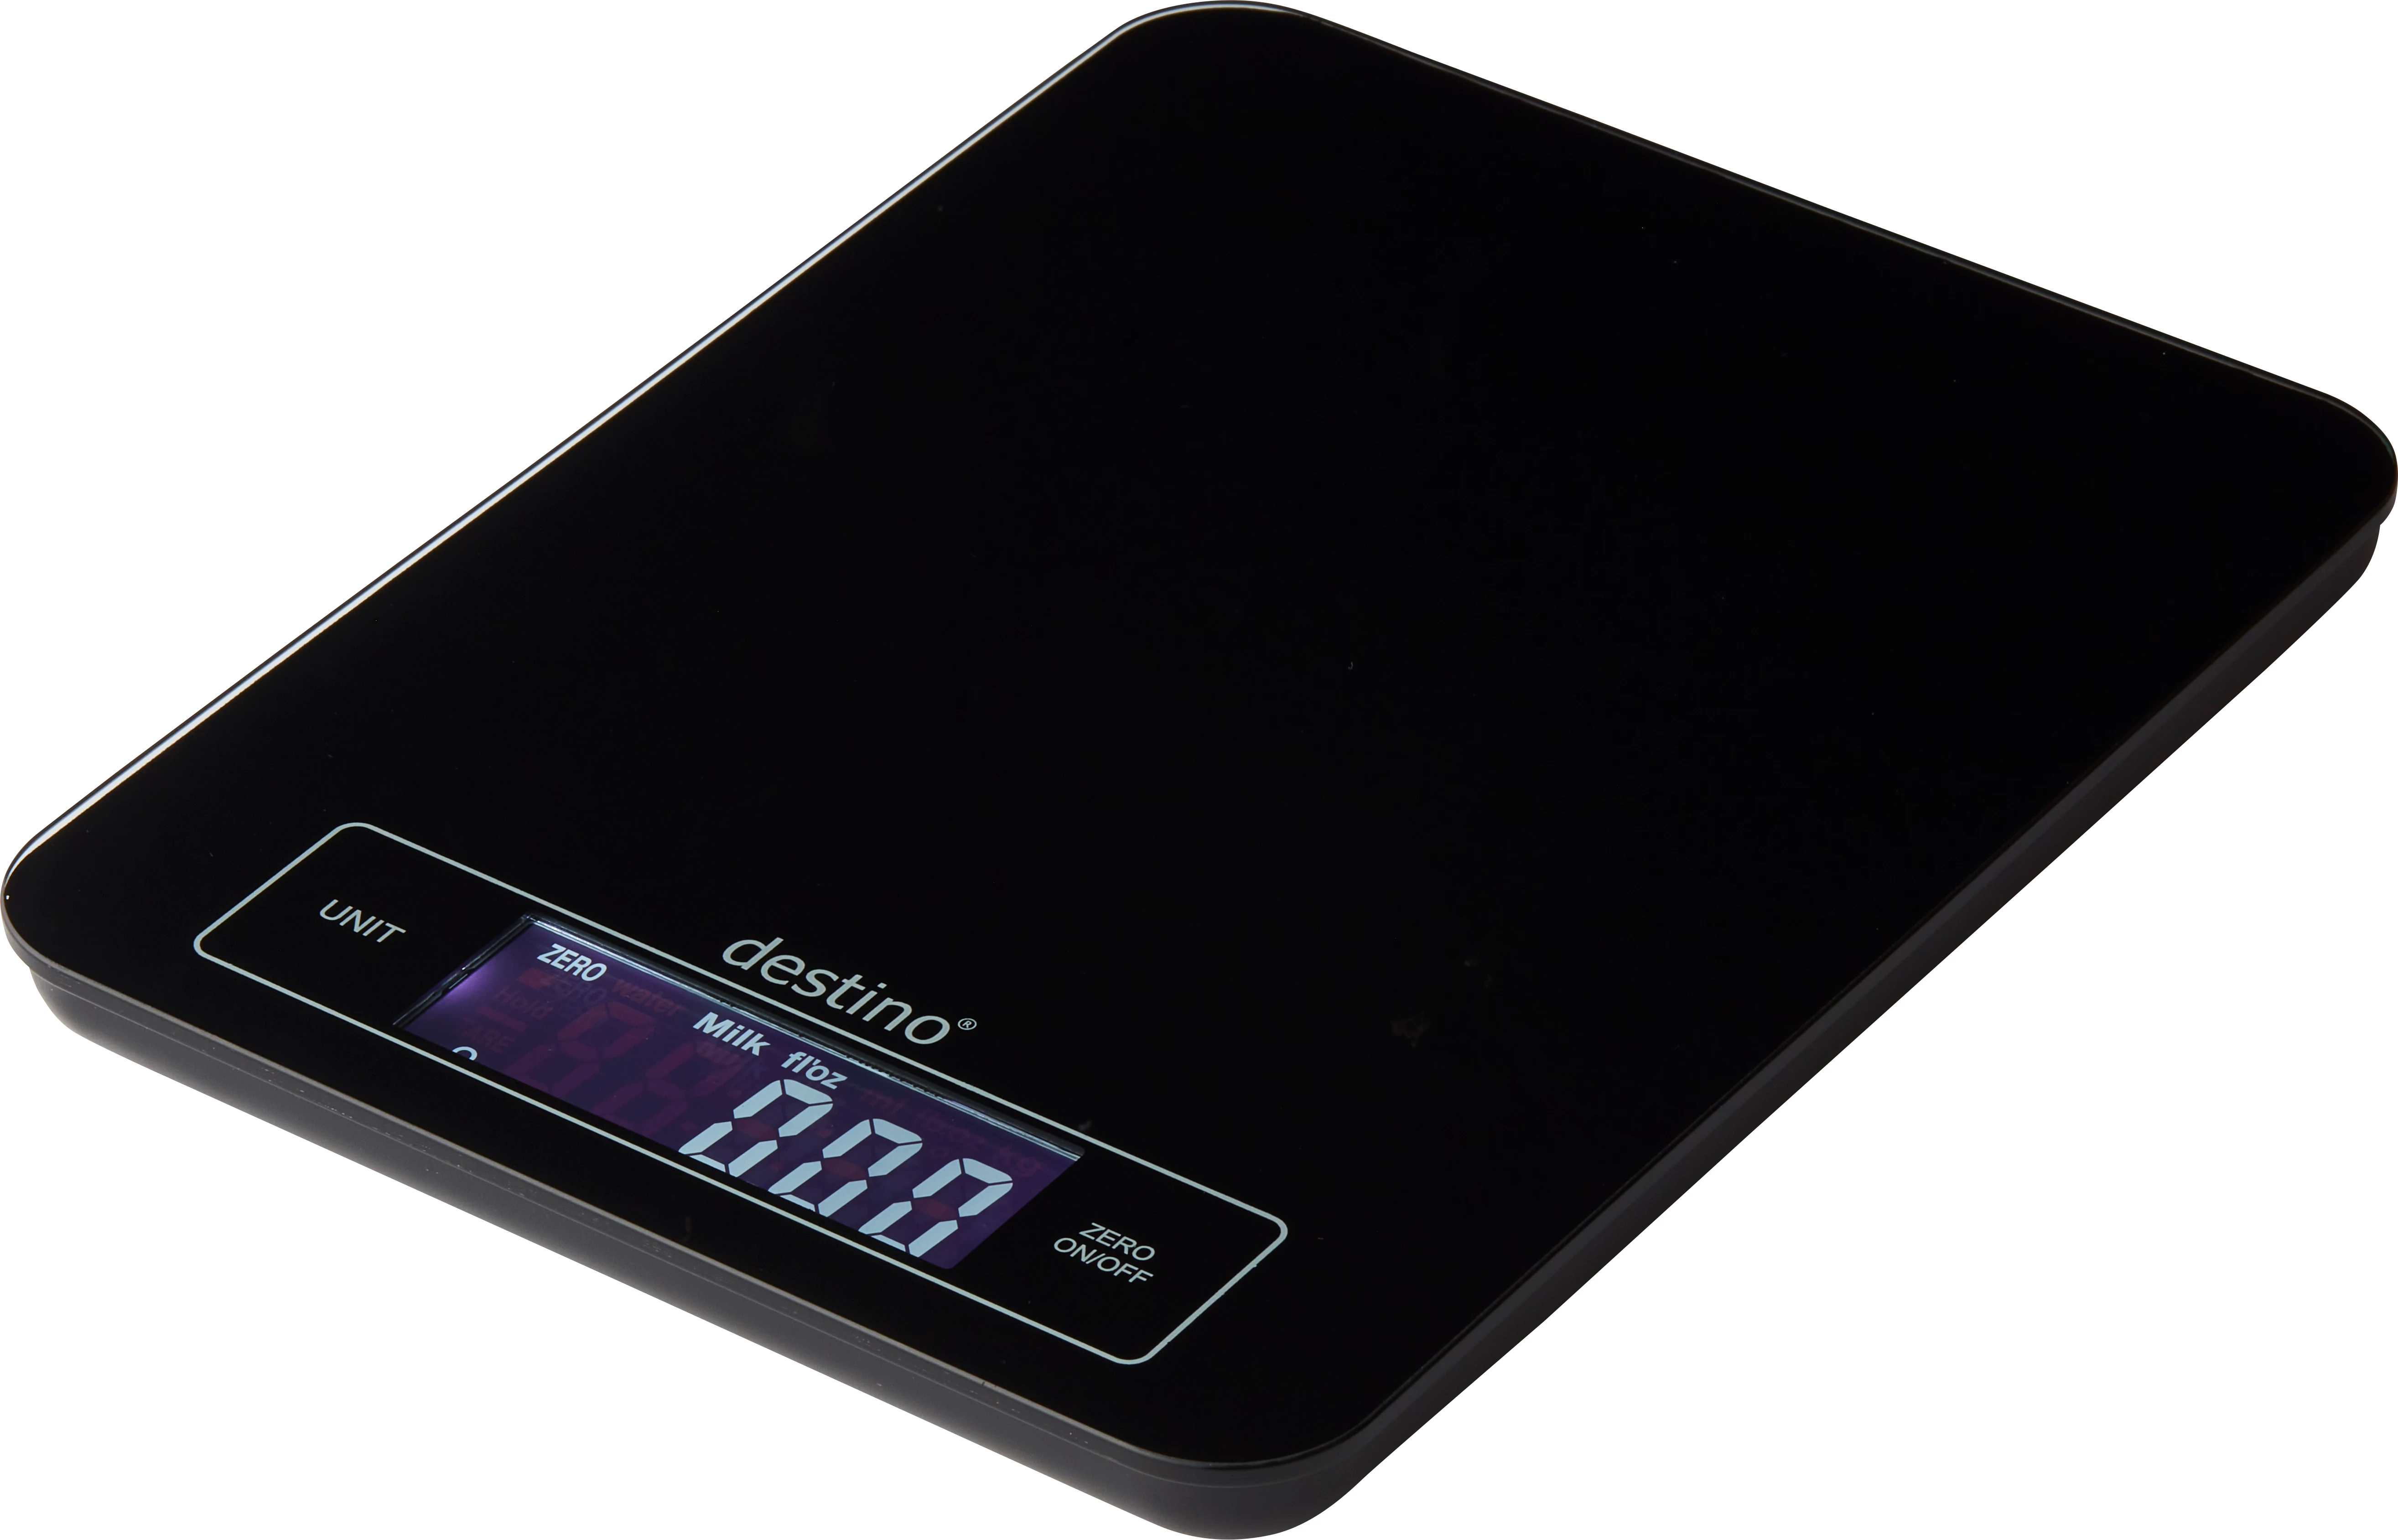 Destino vægt, elektronisk, sort, 15 kg/1 g